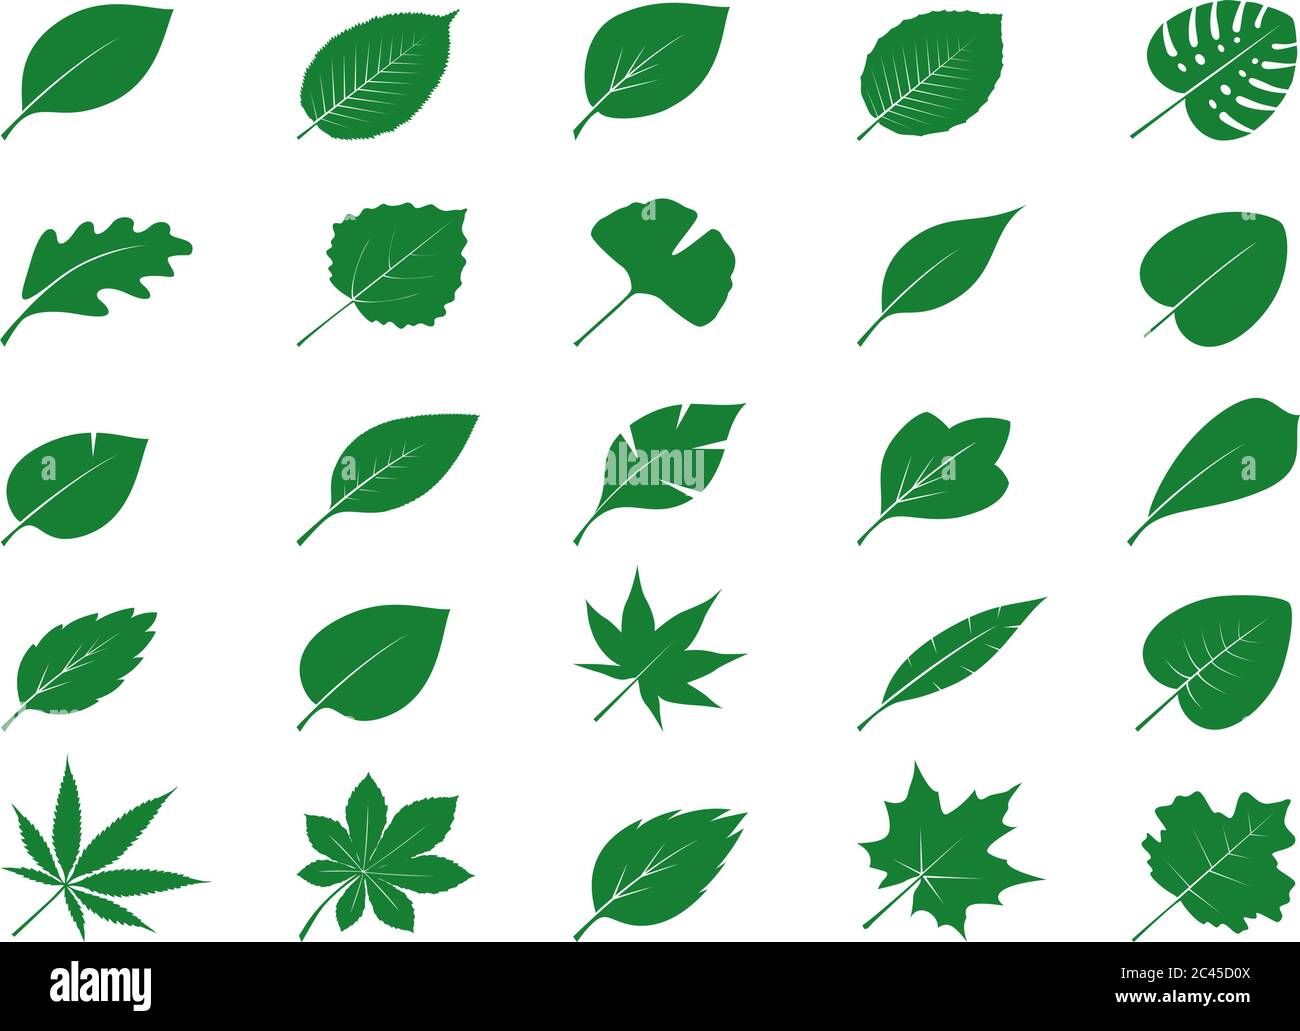 Sammlung von grünen Blättern. Vektorgrafik. Natur und Pflanzenelemente. Stock Vektor